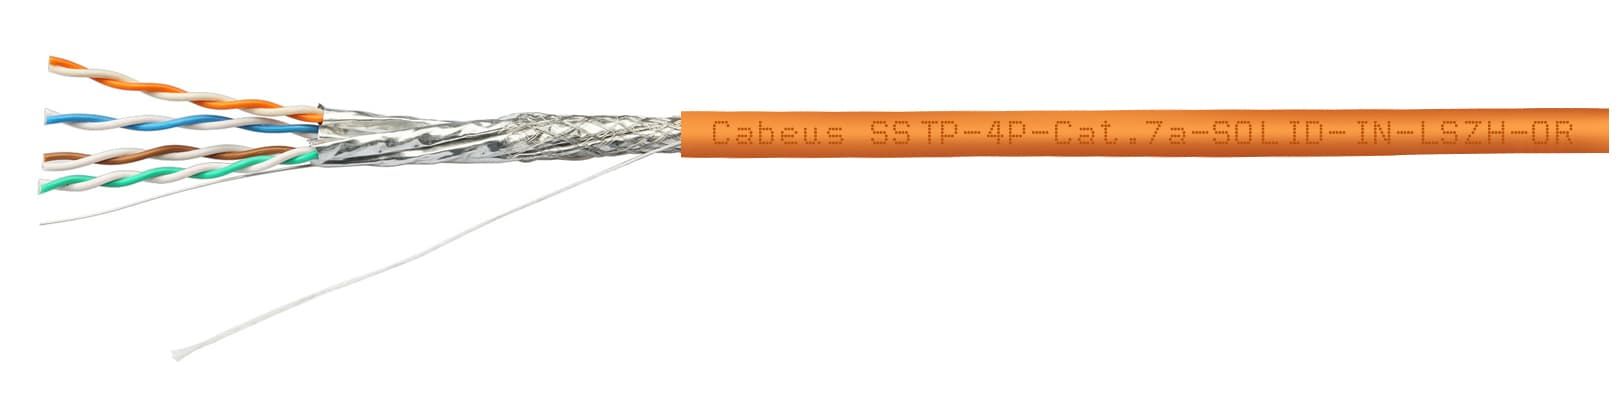 Cabeus SSTP-4P-Cat.8-SOLID-IN-LSZH